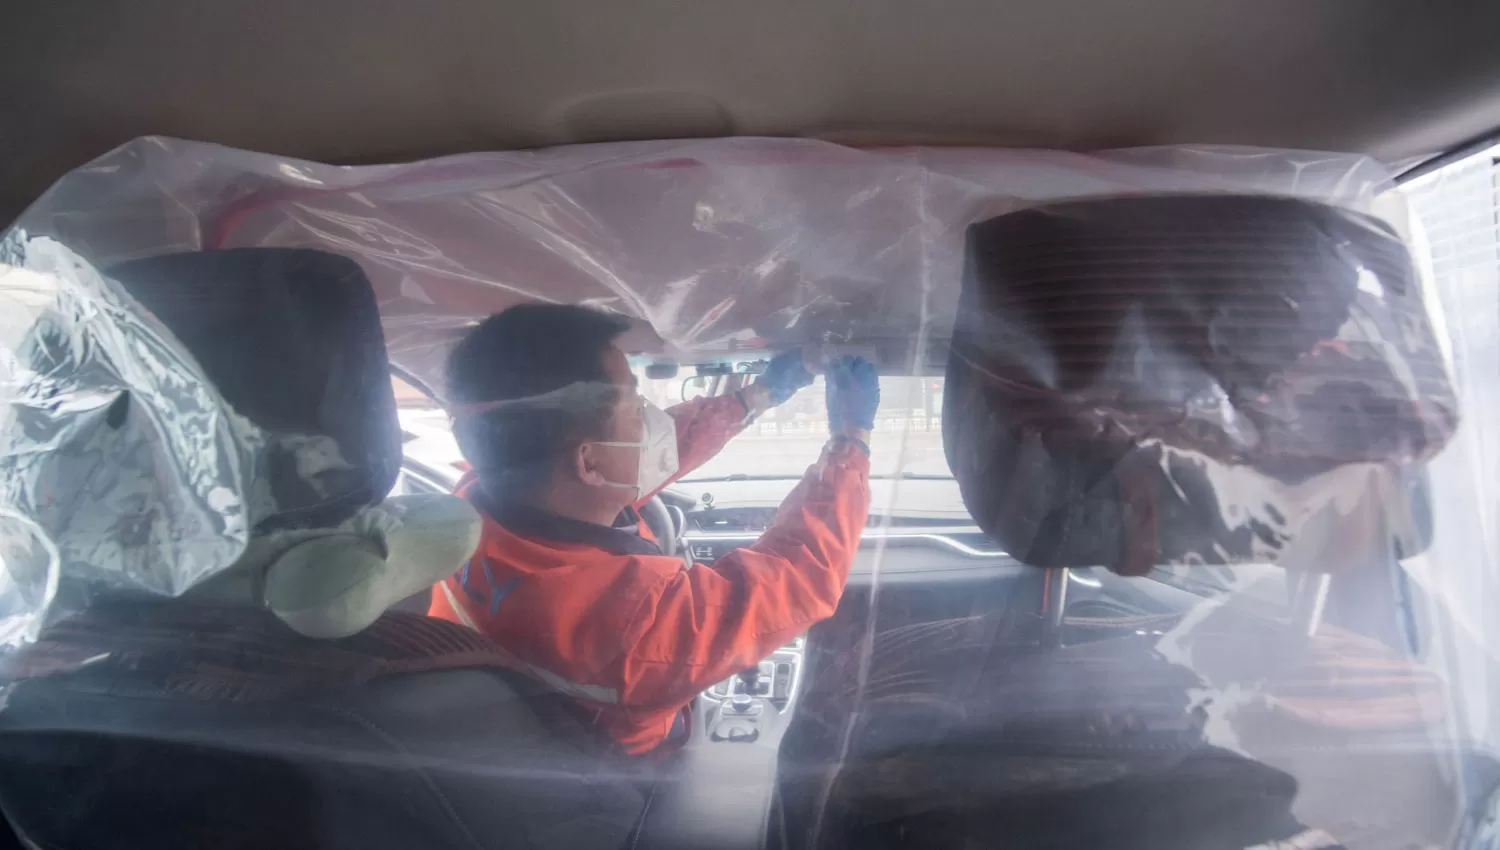 PREVENCIÓN. Un hombre coloca plásticos dentro de un taxi para separar los habitáculos entre conductor y pasajeros debido al coronavirus.